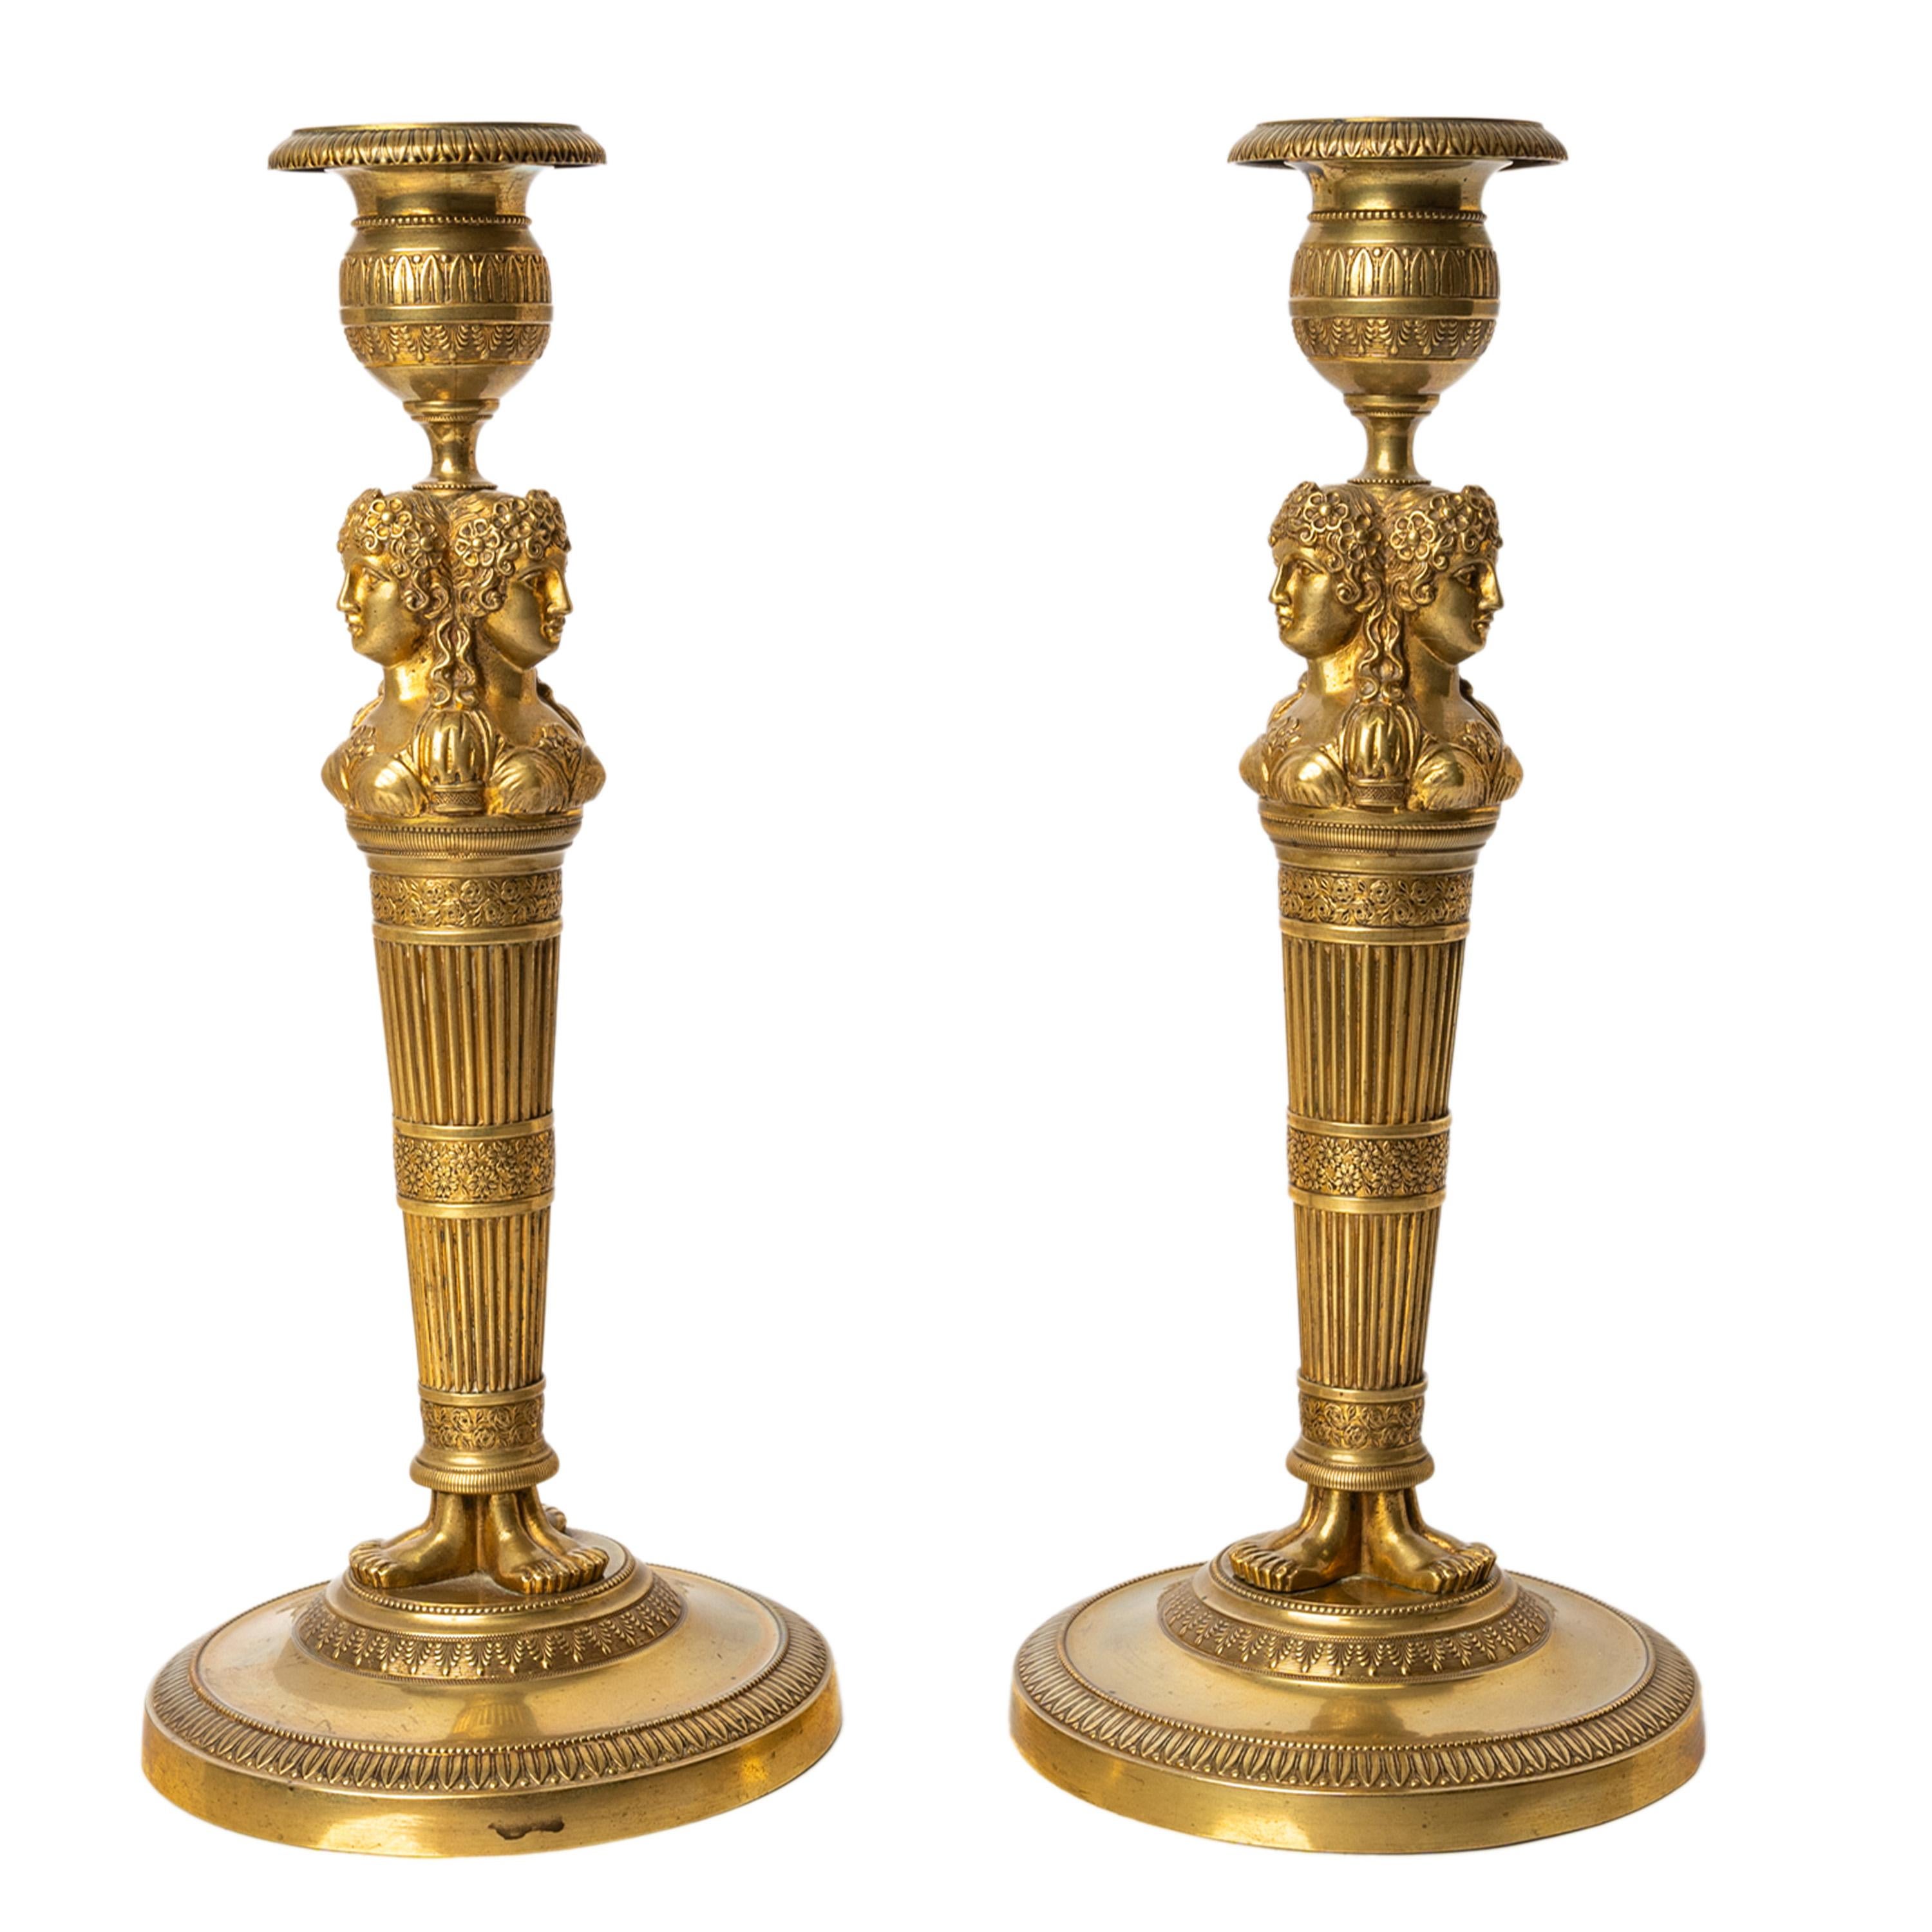 Ein sehr schönes Paar antiker vergoldeter Bronze aus dem frühen 19. Jahrhundert, französische Kerzenständer im neoklassischen Empire-Stil, um 1820.
Die Kerzenständer haben abnehmbare Leuchter und kugelförmige Kapitelle mit Blatt- und Girlandendekor.